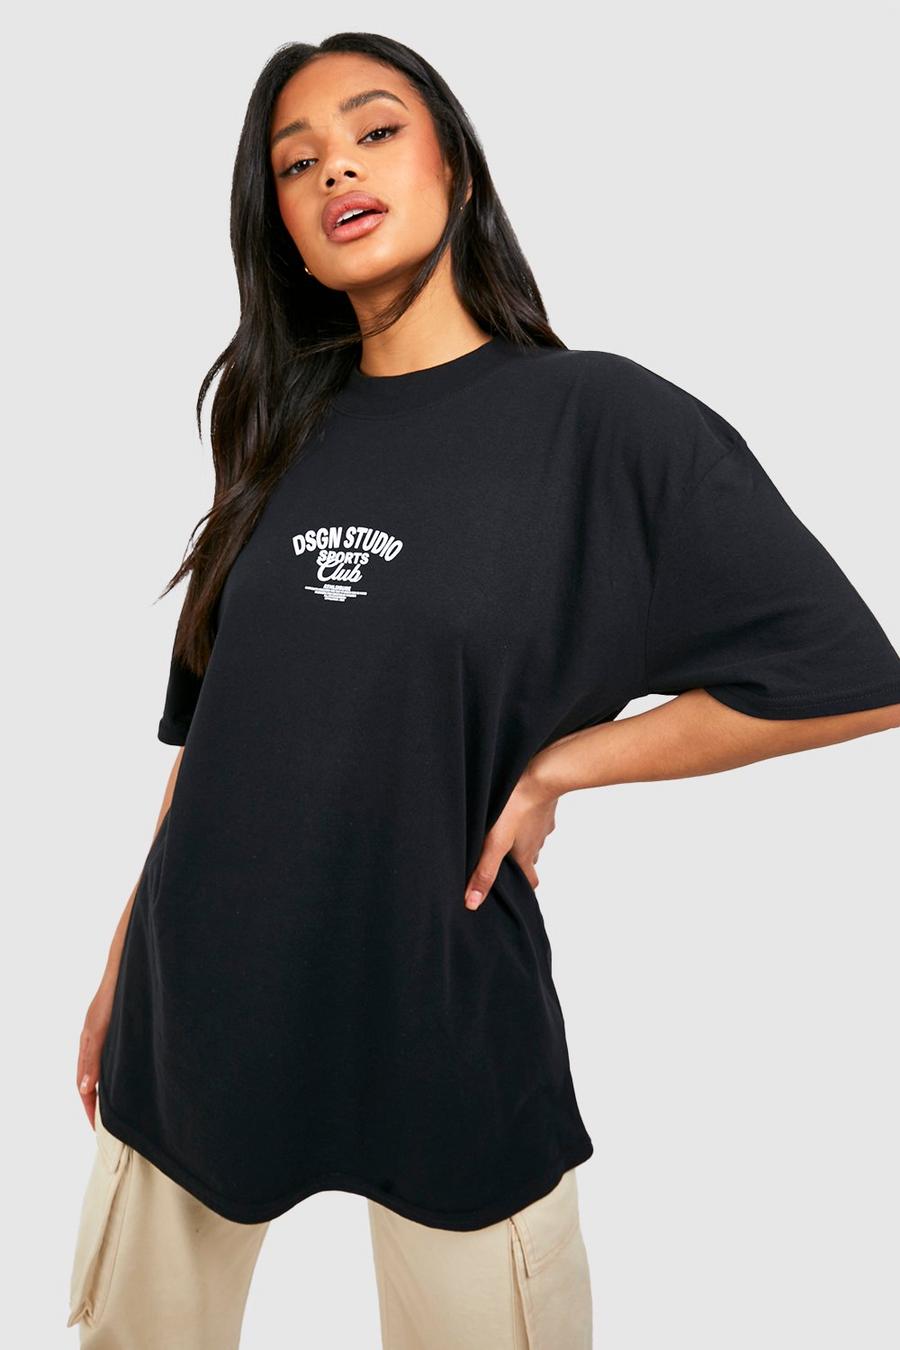 Oversize T-Shirt mit Dsgn Studio Sports Club Slogan, Black